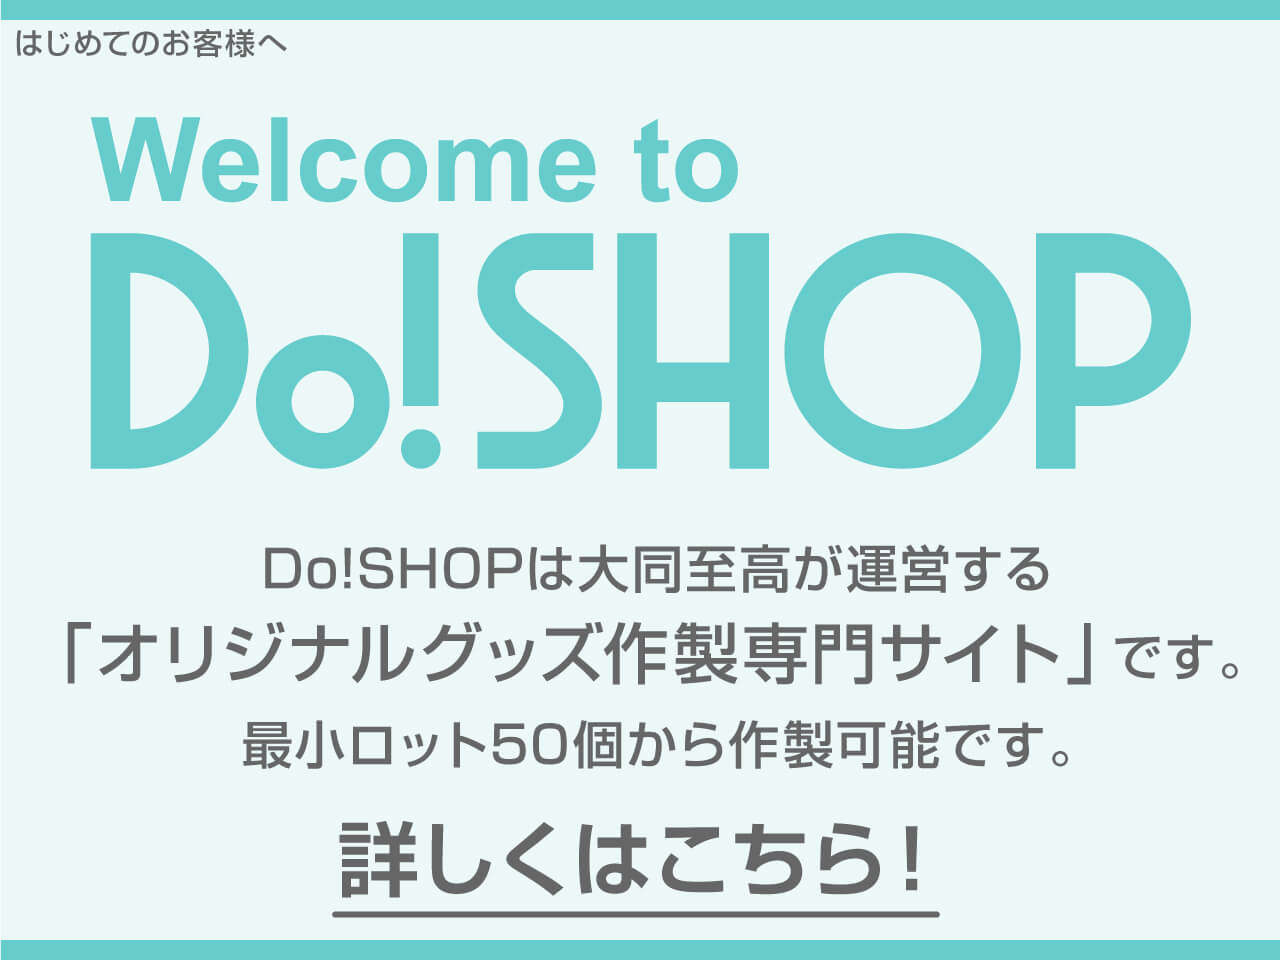 はじめてのお客さまへ　Welcome to Do!SHOP　「オリジナルグッズ作製専門サイト」Do!SHOPは大同至高が運営するお客様のご要望にあわせ、様々な商品が最小ロット50個から作製可能です。　詳しくはこちら